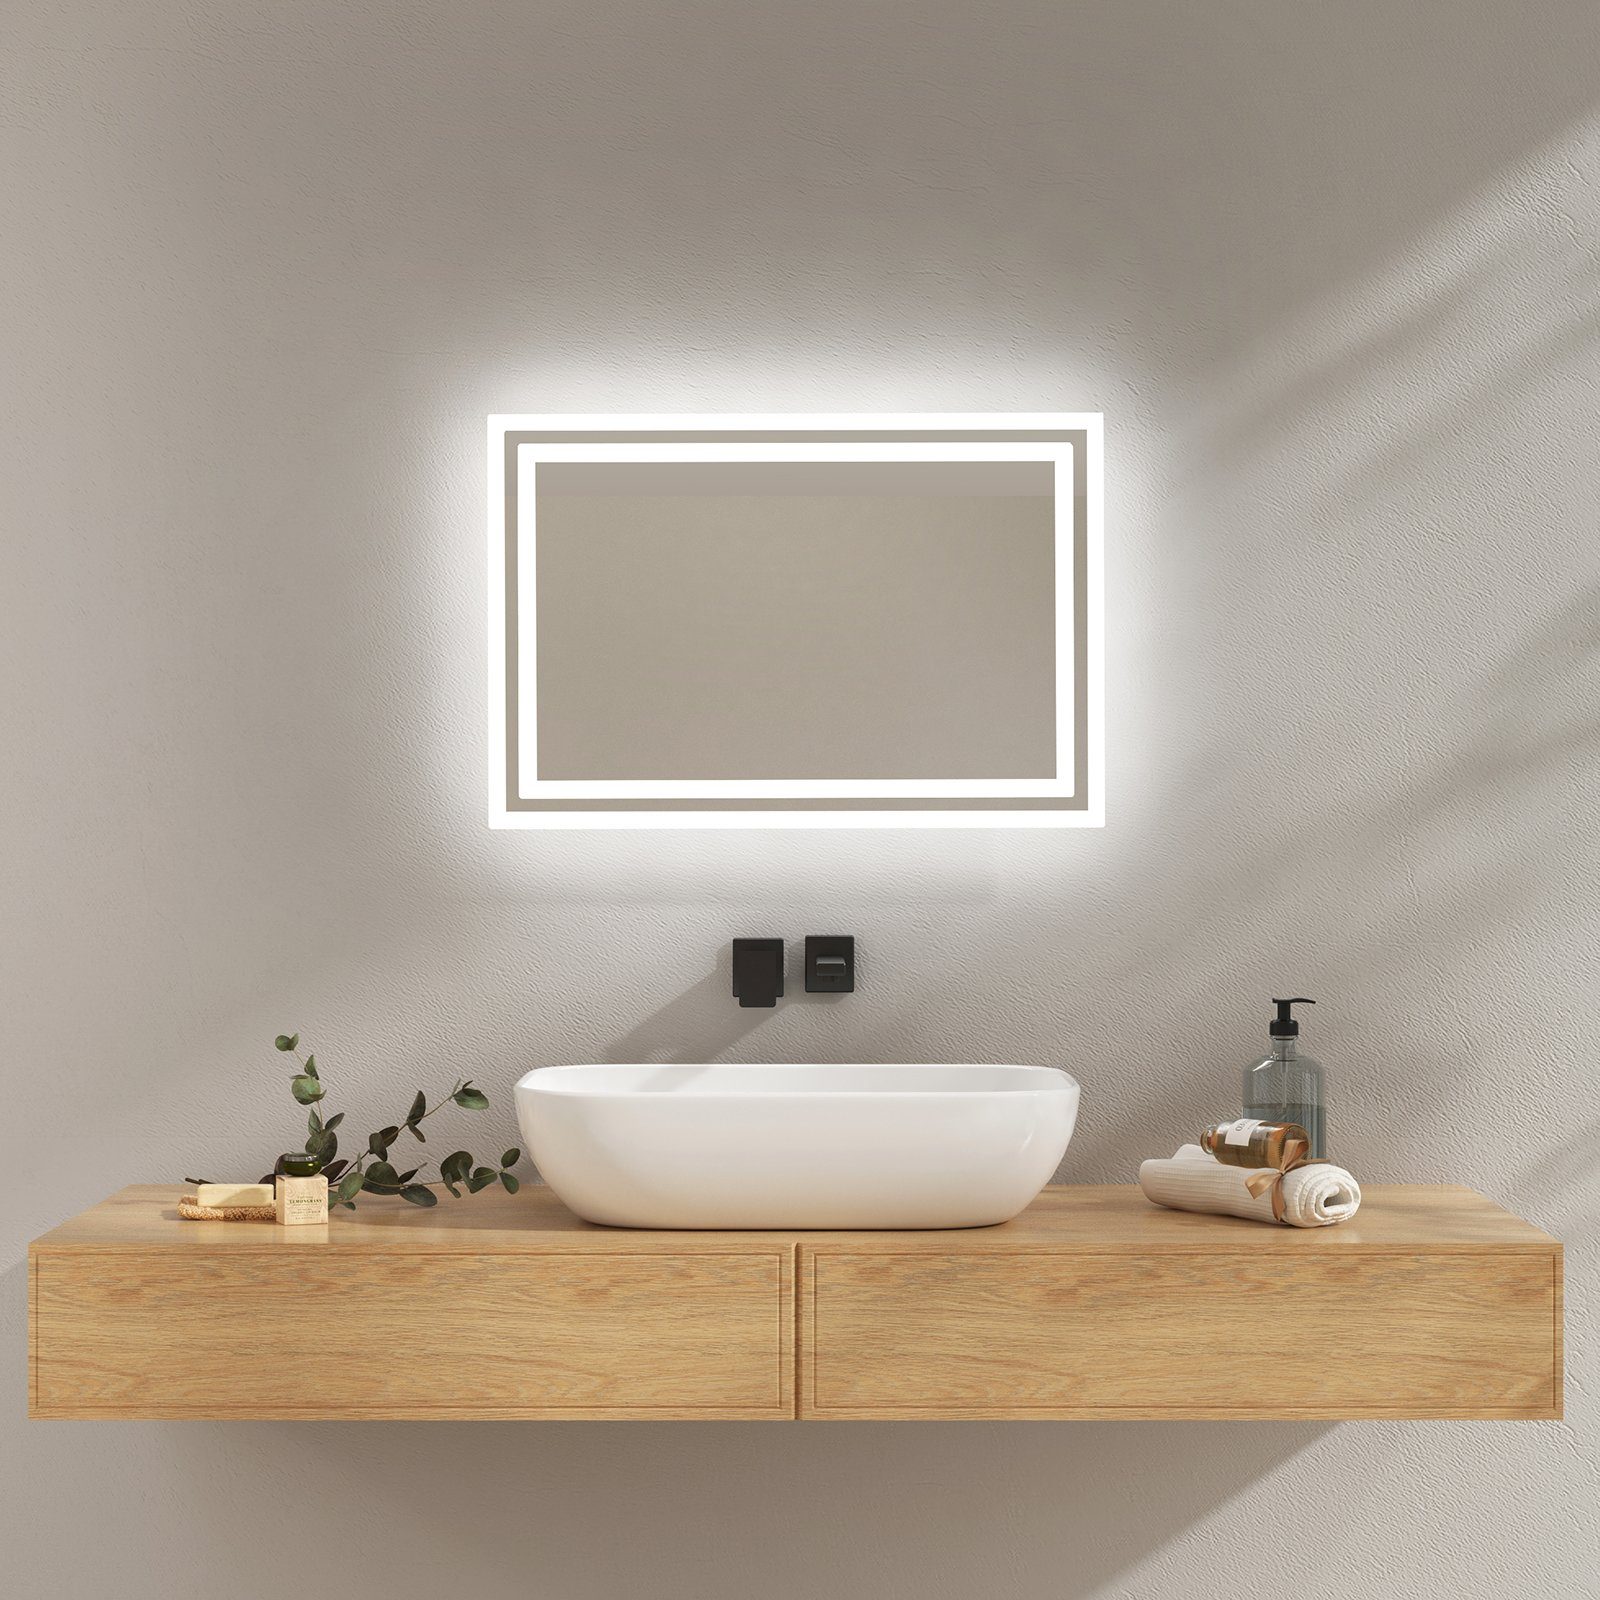 EMKE Badspiegel mit Beleuchtung LED Badezimmerspiegel Wandspiegel (Vertikal Horizontal möglich), Beschlagfrei, 2 Lichtfarben, Druckknopfschalter IP44